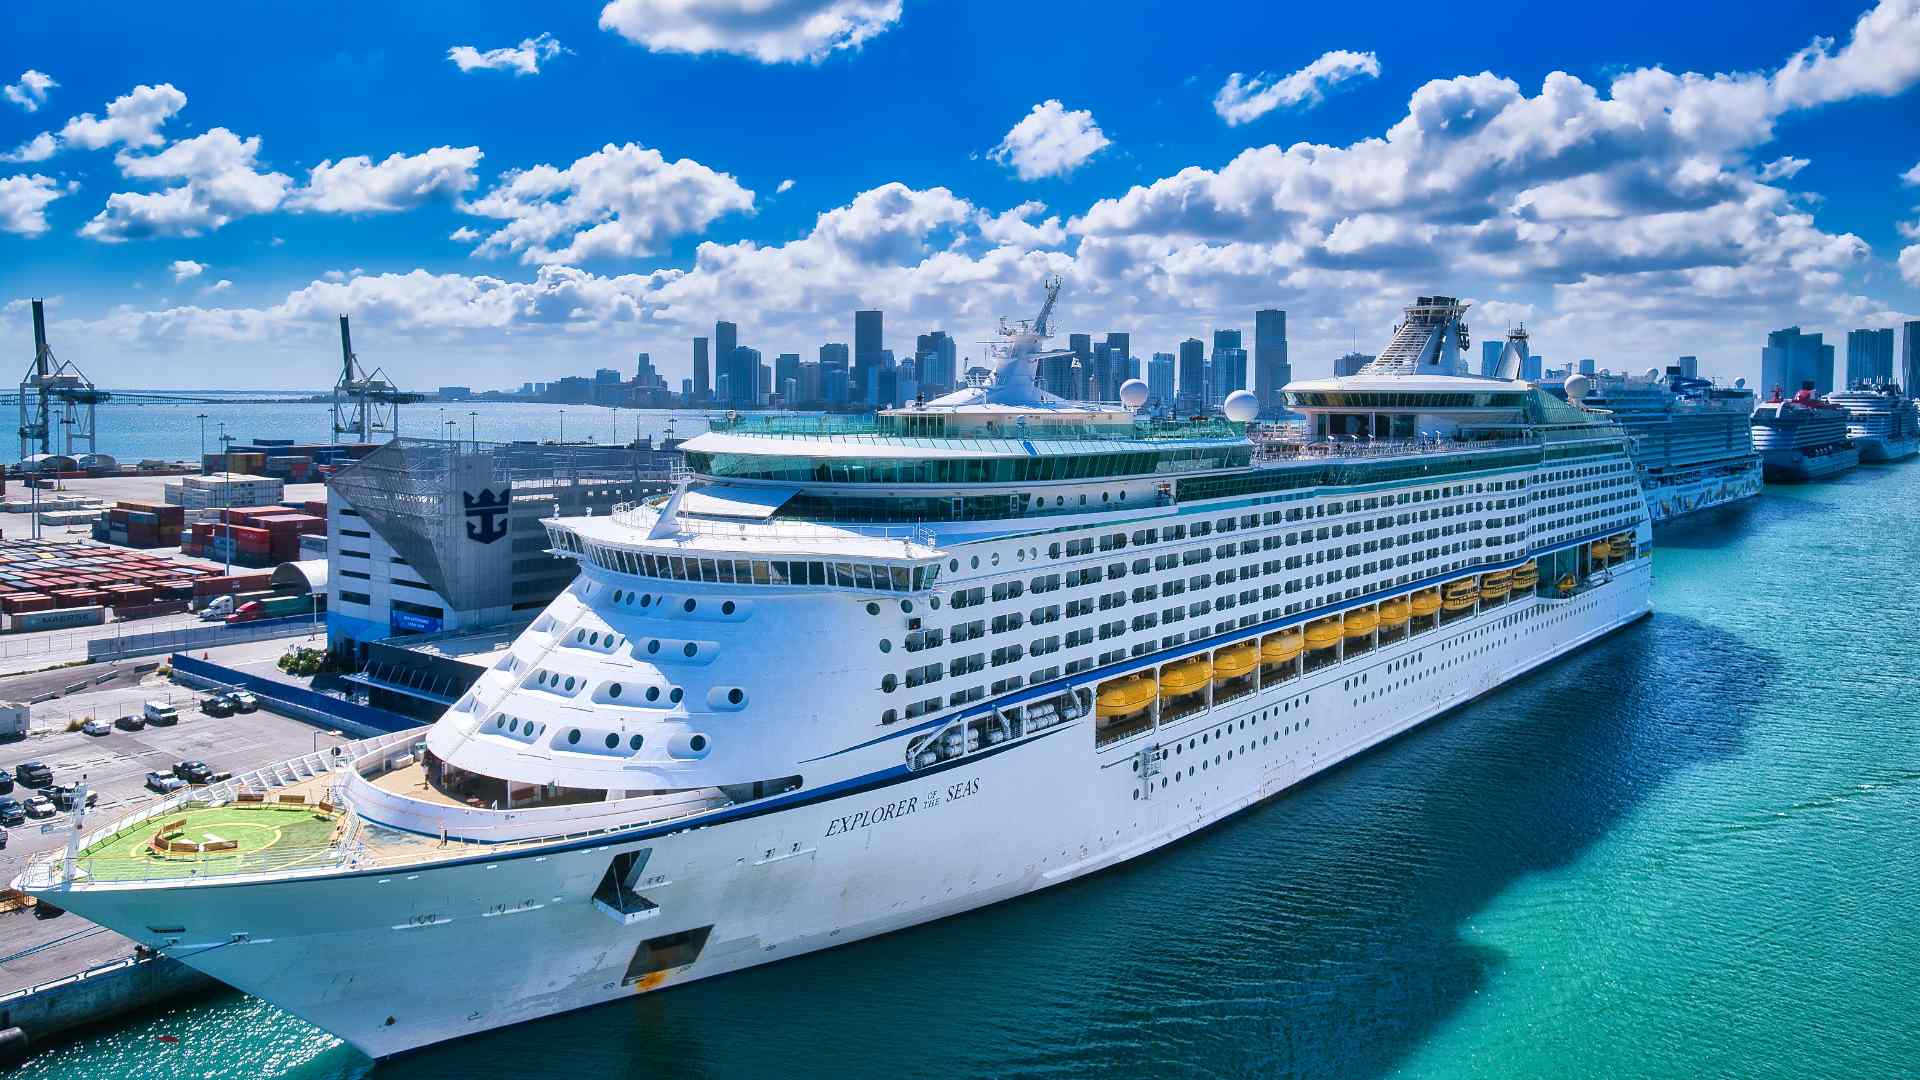 Bermuda Cruise from New York City